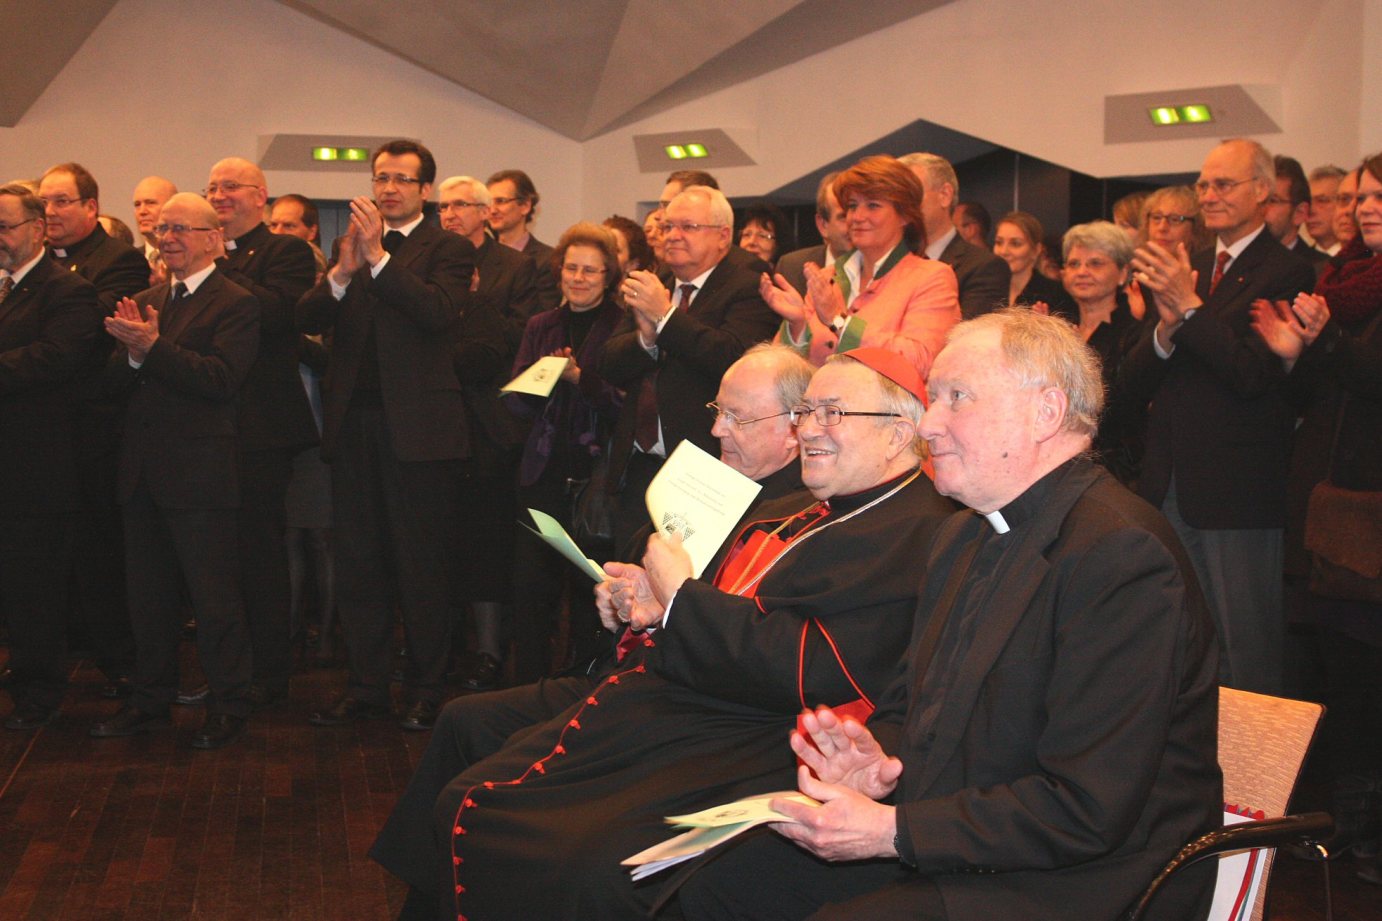 Mainz, 12. Januar 2013: Der Ketteler-Saal war wieder sehr gut gefüllt beim Neujahrsempfang des Bistums im Erbacher Hof. (c) Bistum Mainz / Blum